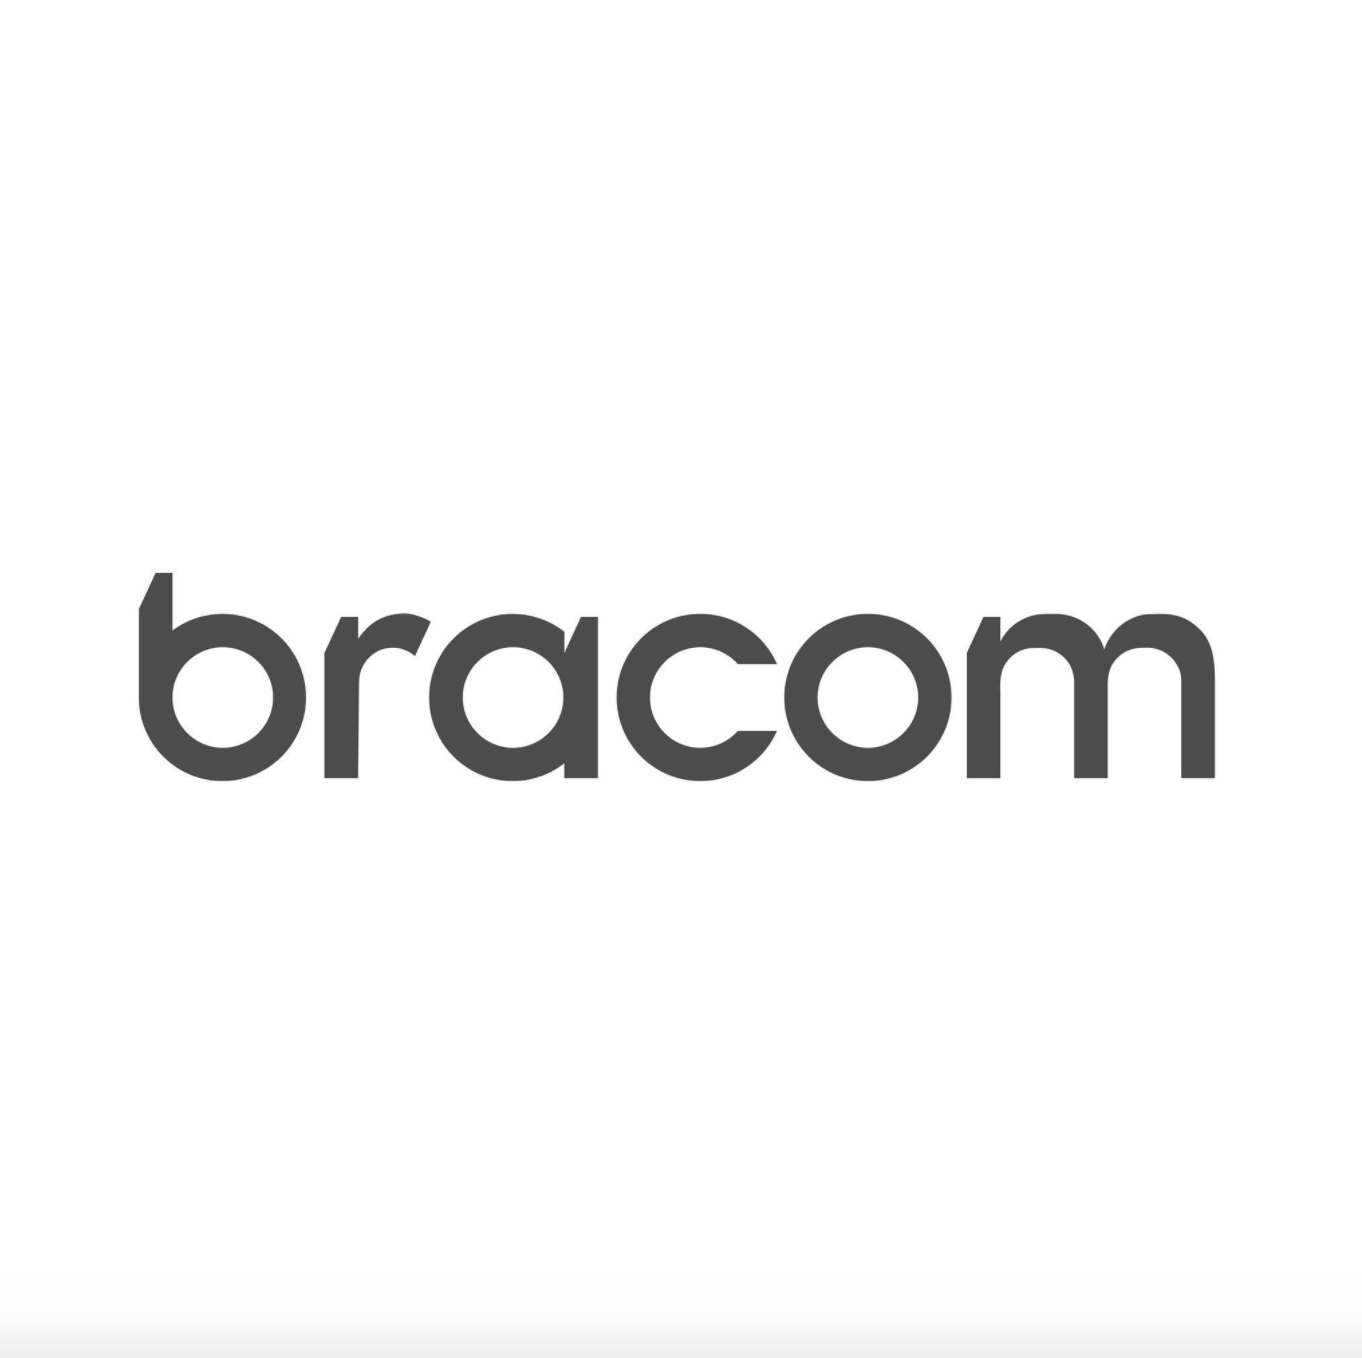 Bracom Agency